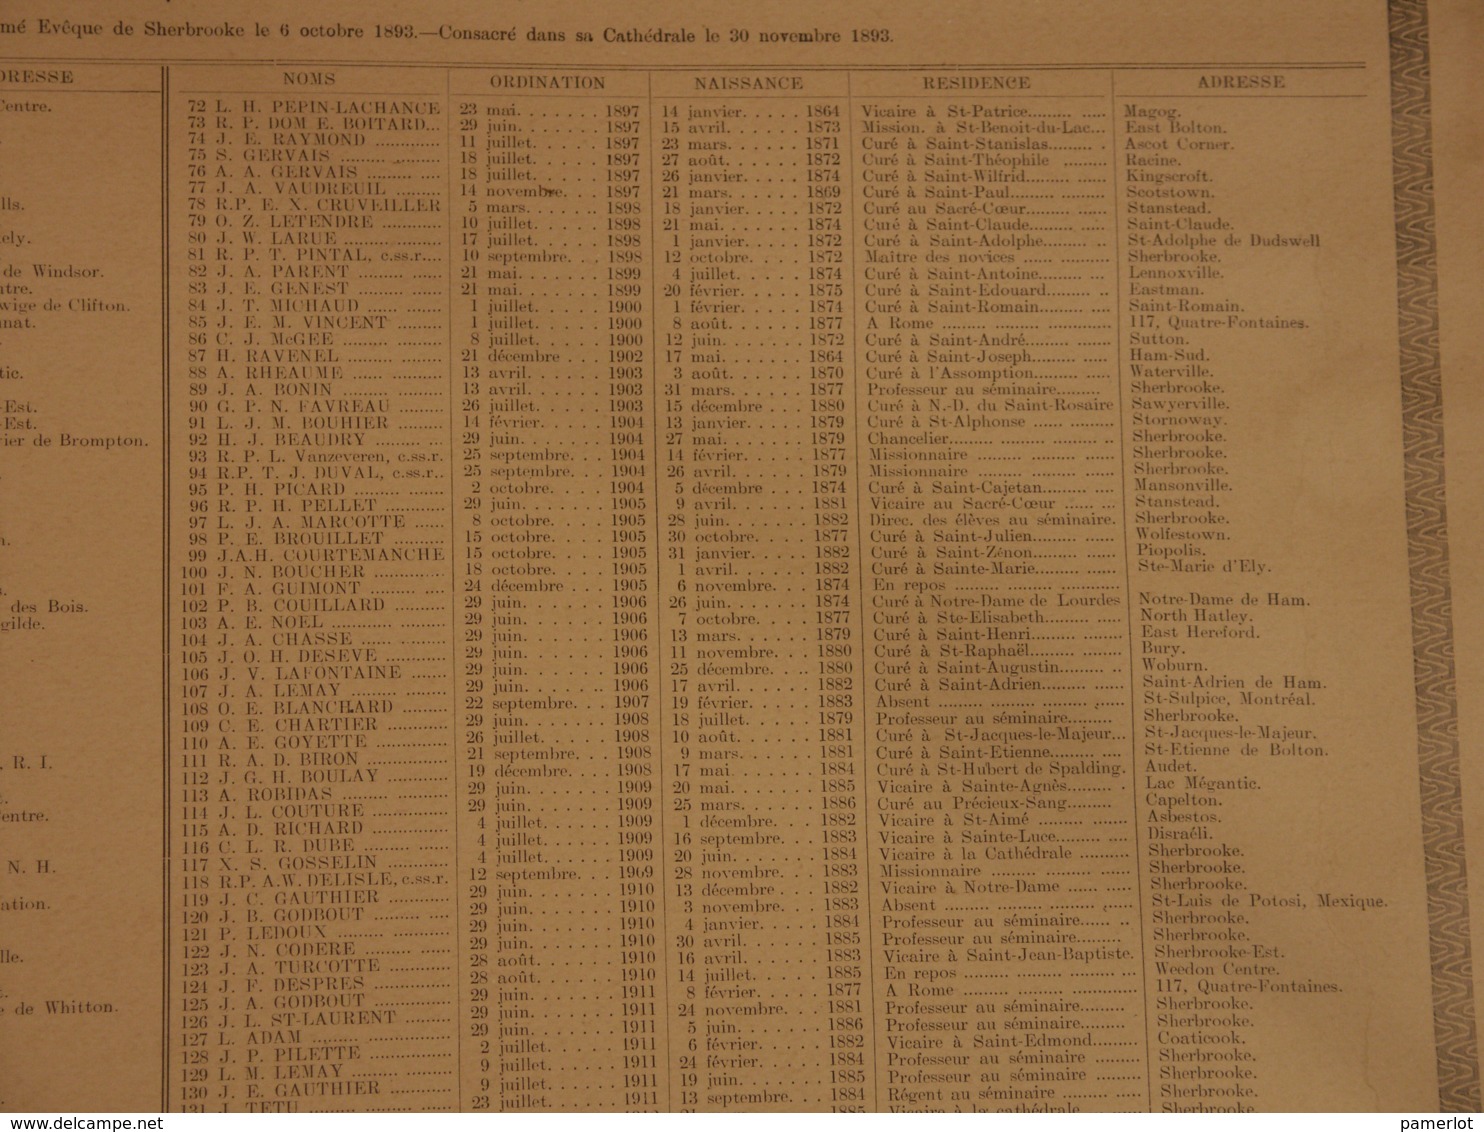 P. Quebec, Historique -Recensement  Religieux  du diocese de Sherbrooke le 1er Jan 1914 -  57cm X 45cm